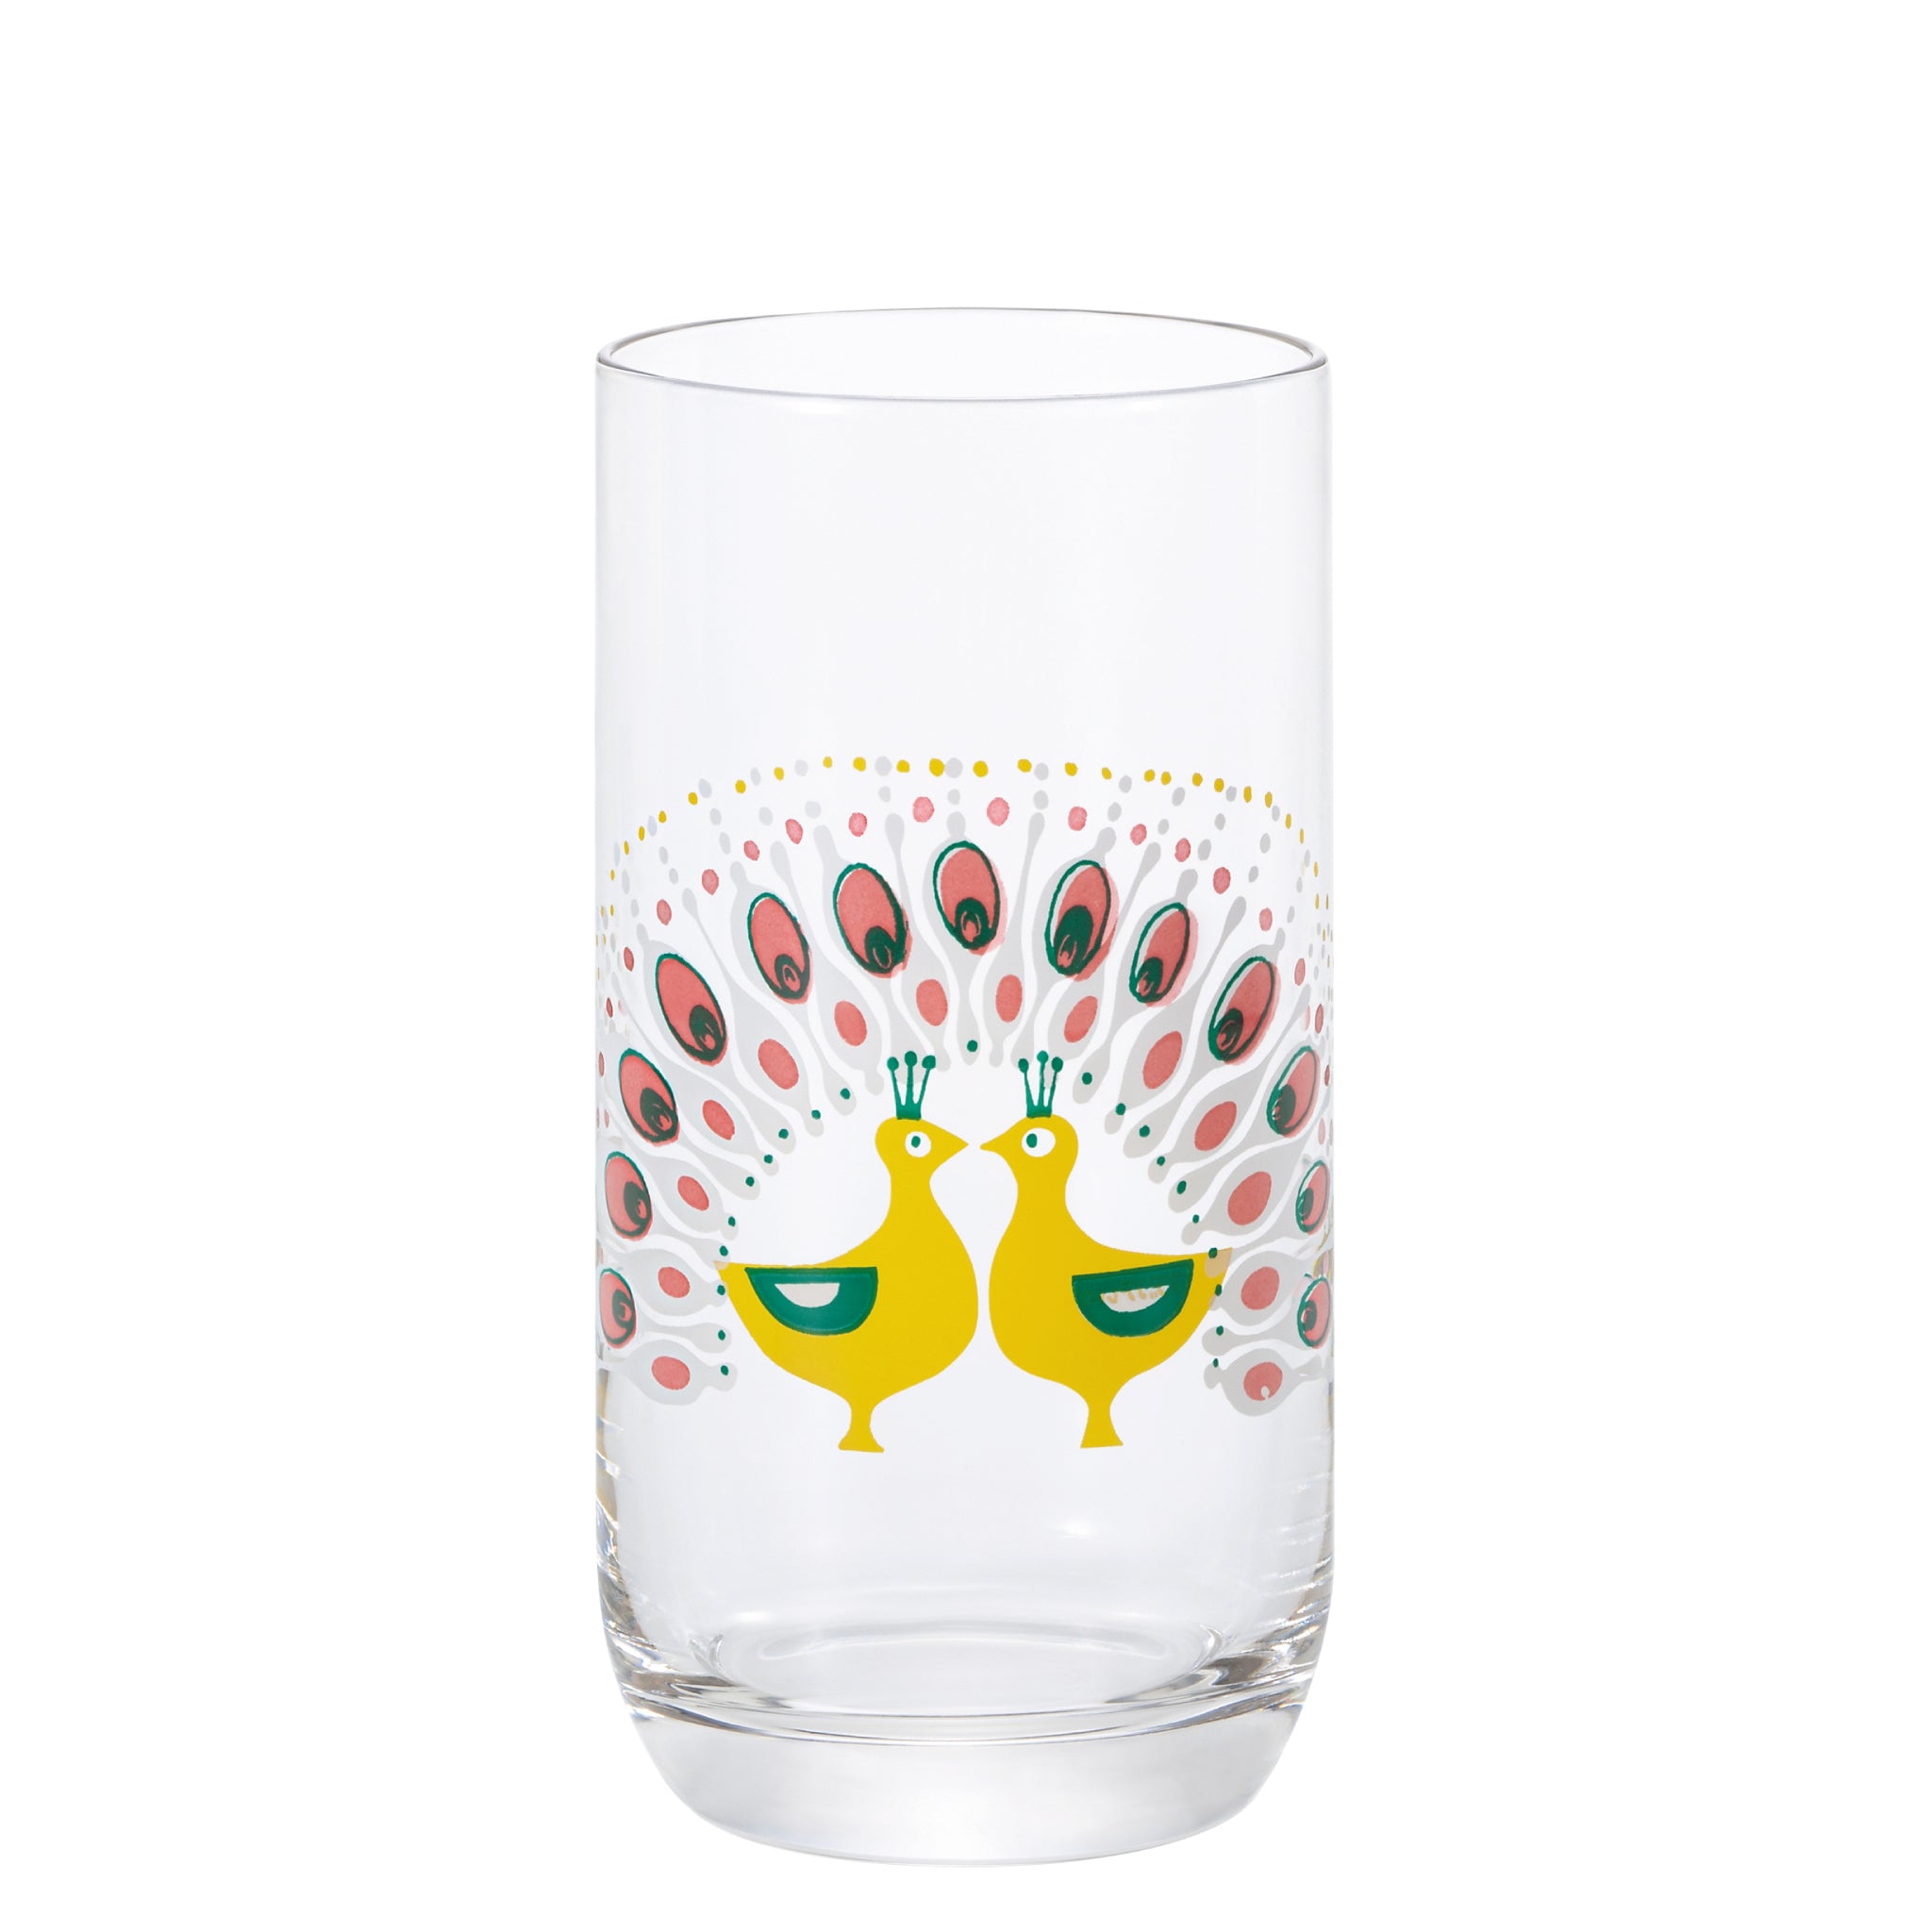 昭和 レトロ ガラス 食器 アデリア コップ グラス タンブラー10 メタモ絵具 – アデリアレトロオフィシャルショップ